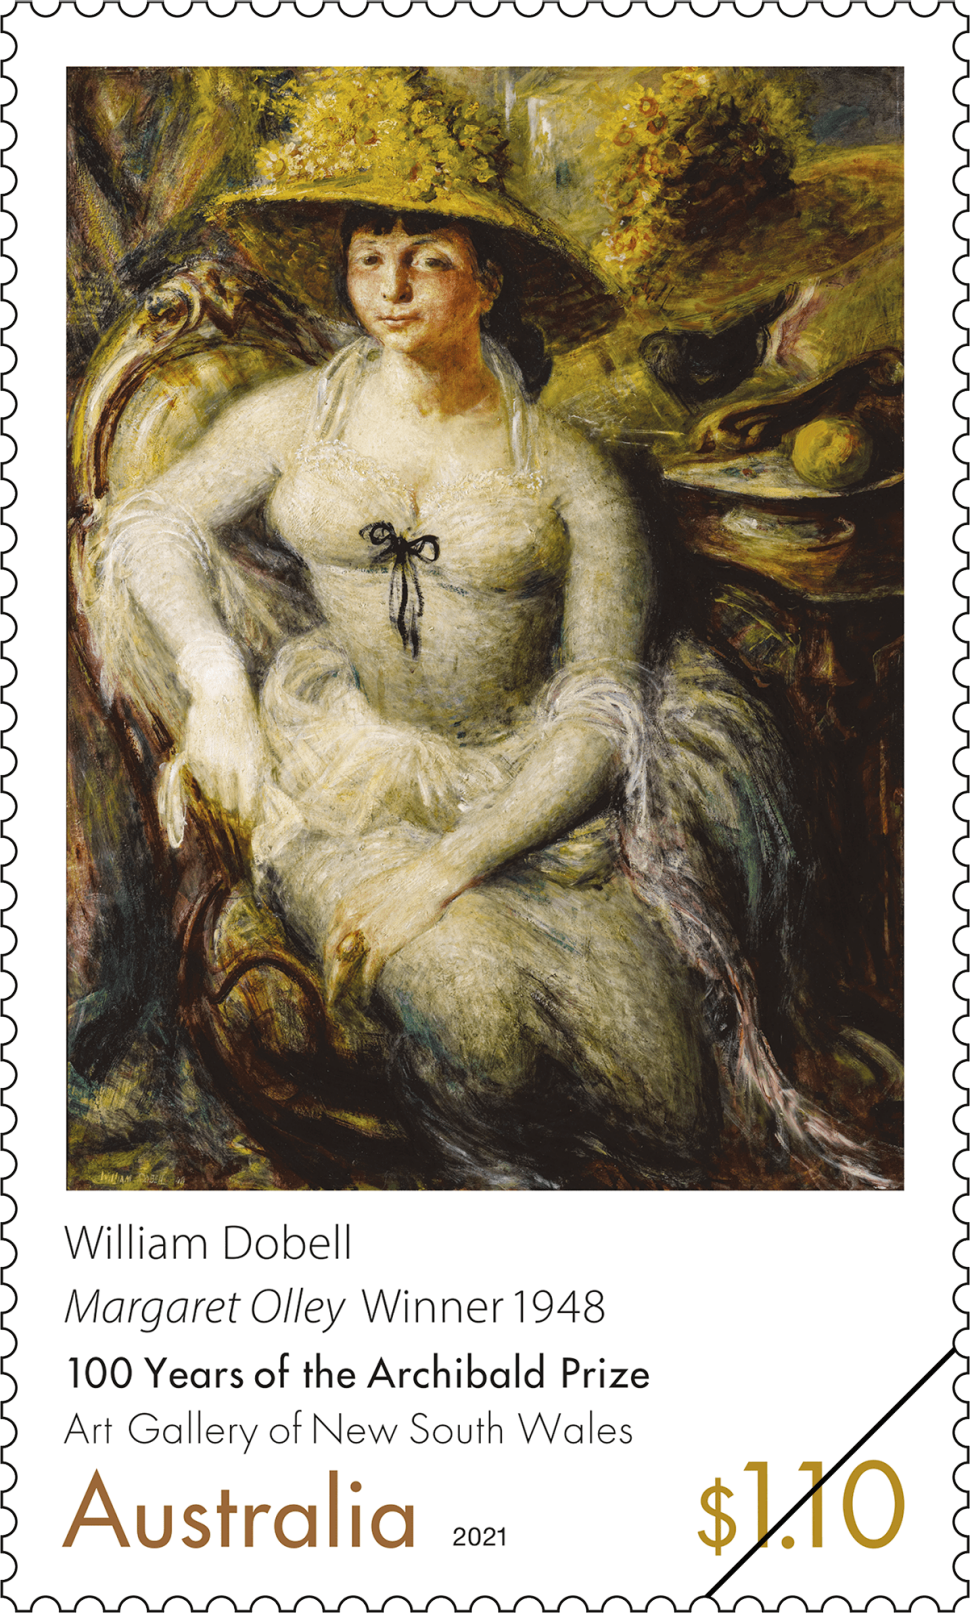 $1.10 William Dobell, Margaret Olley 1948